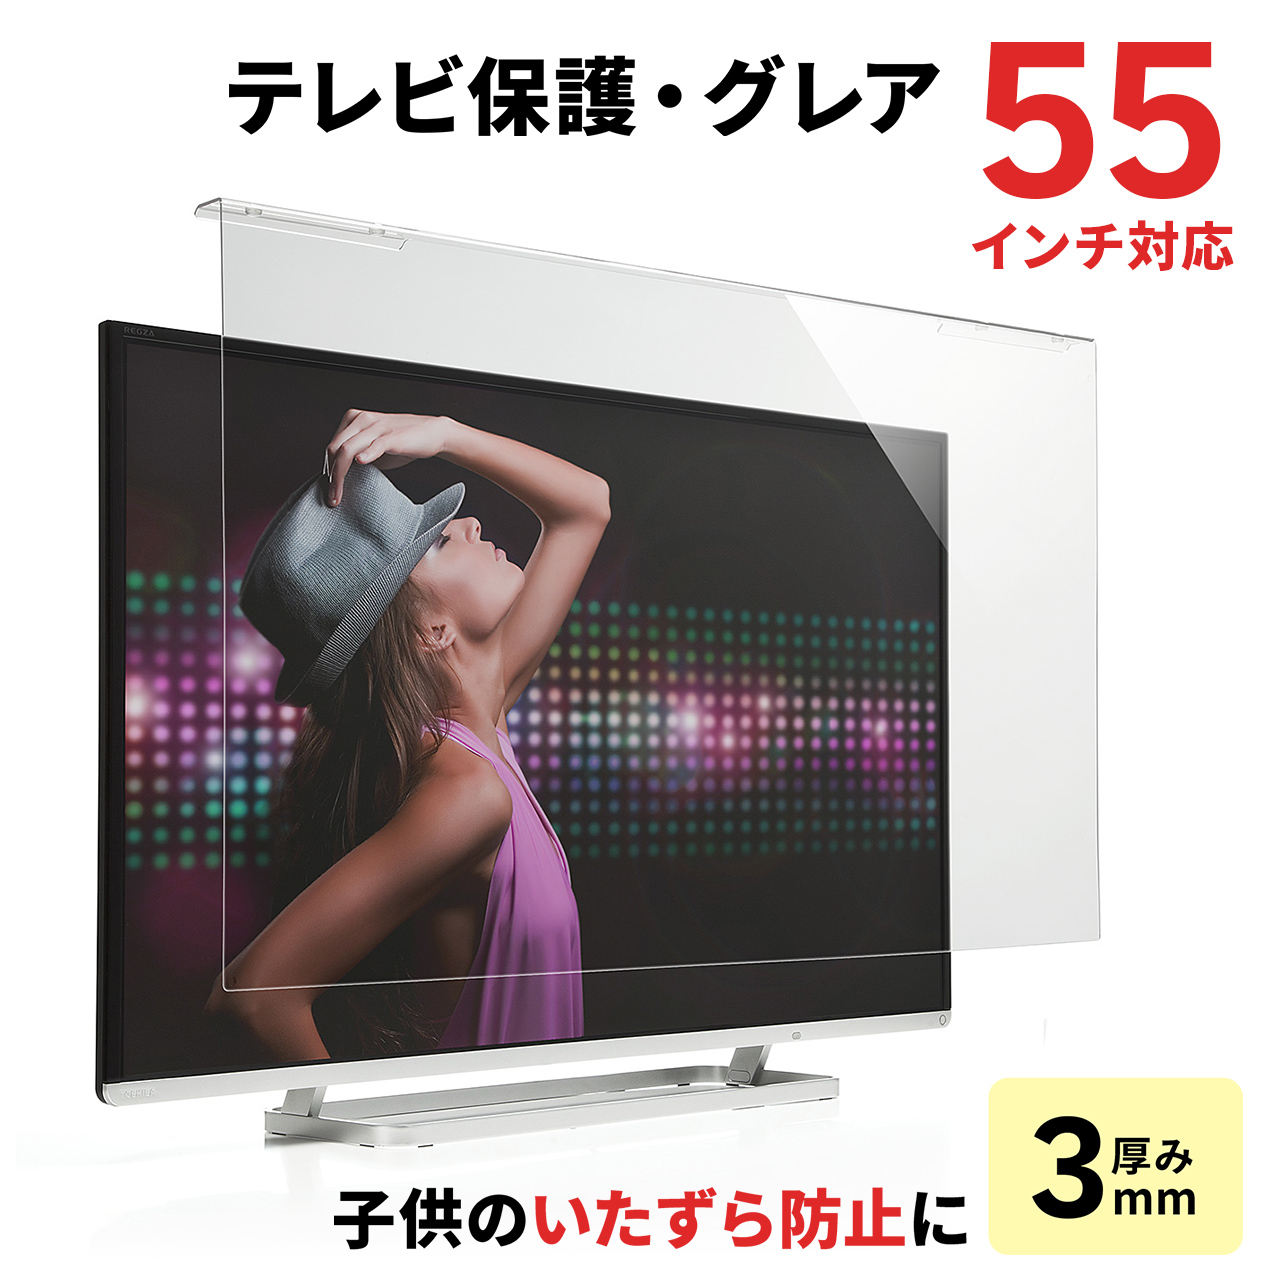 【ラストチャンス夏セール】液晶テレビ保護パネル(55インチ対応・アクリル製) 200-CRT018